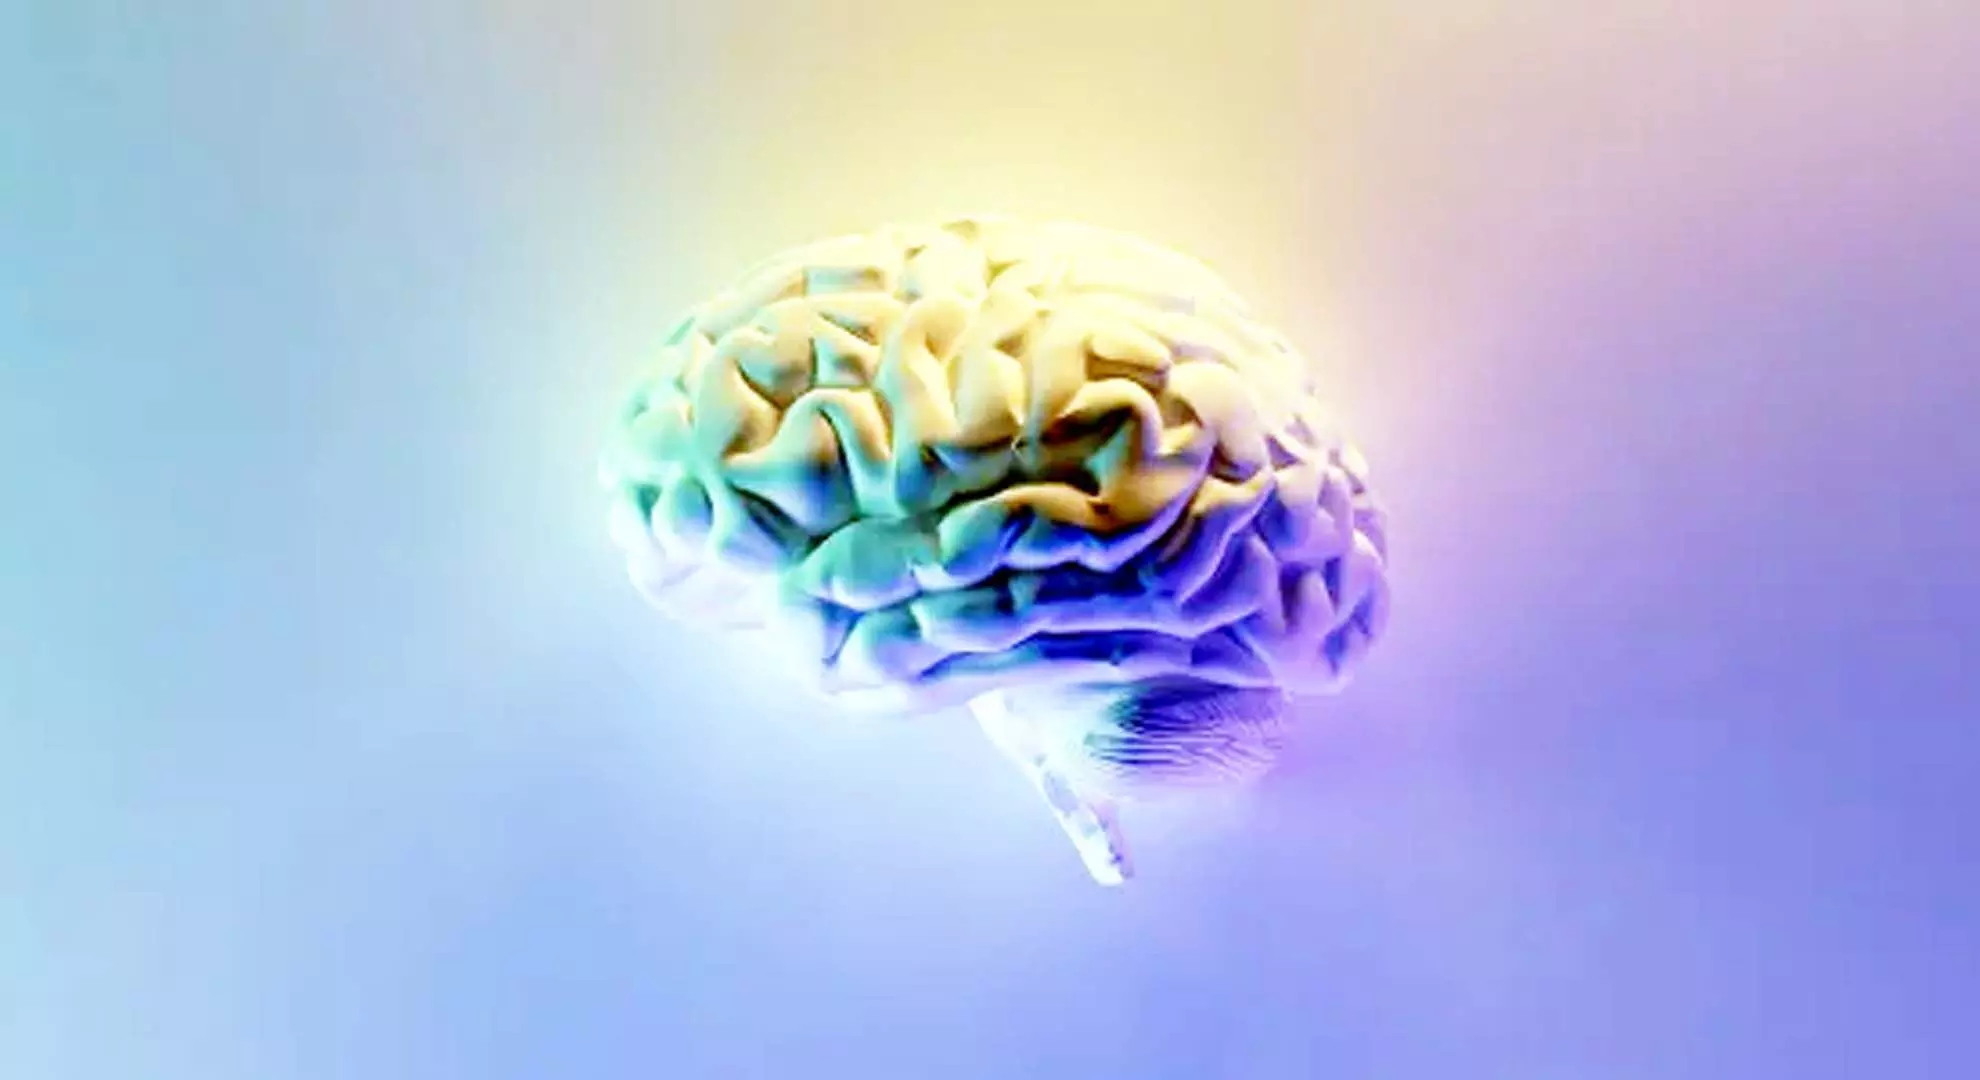 वैज्ञानिकों ने नई मस्तिष्क संचार पद्धति की खोज की